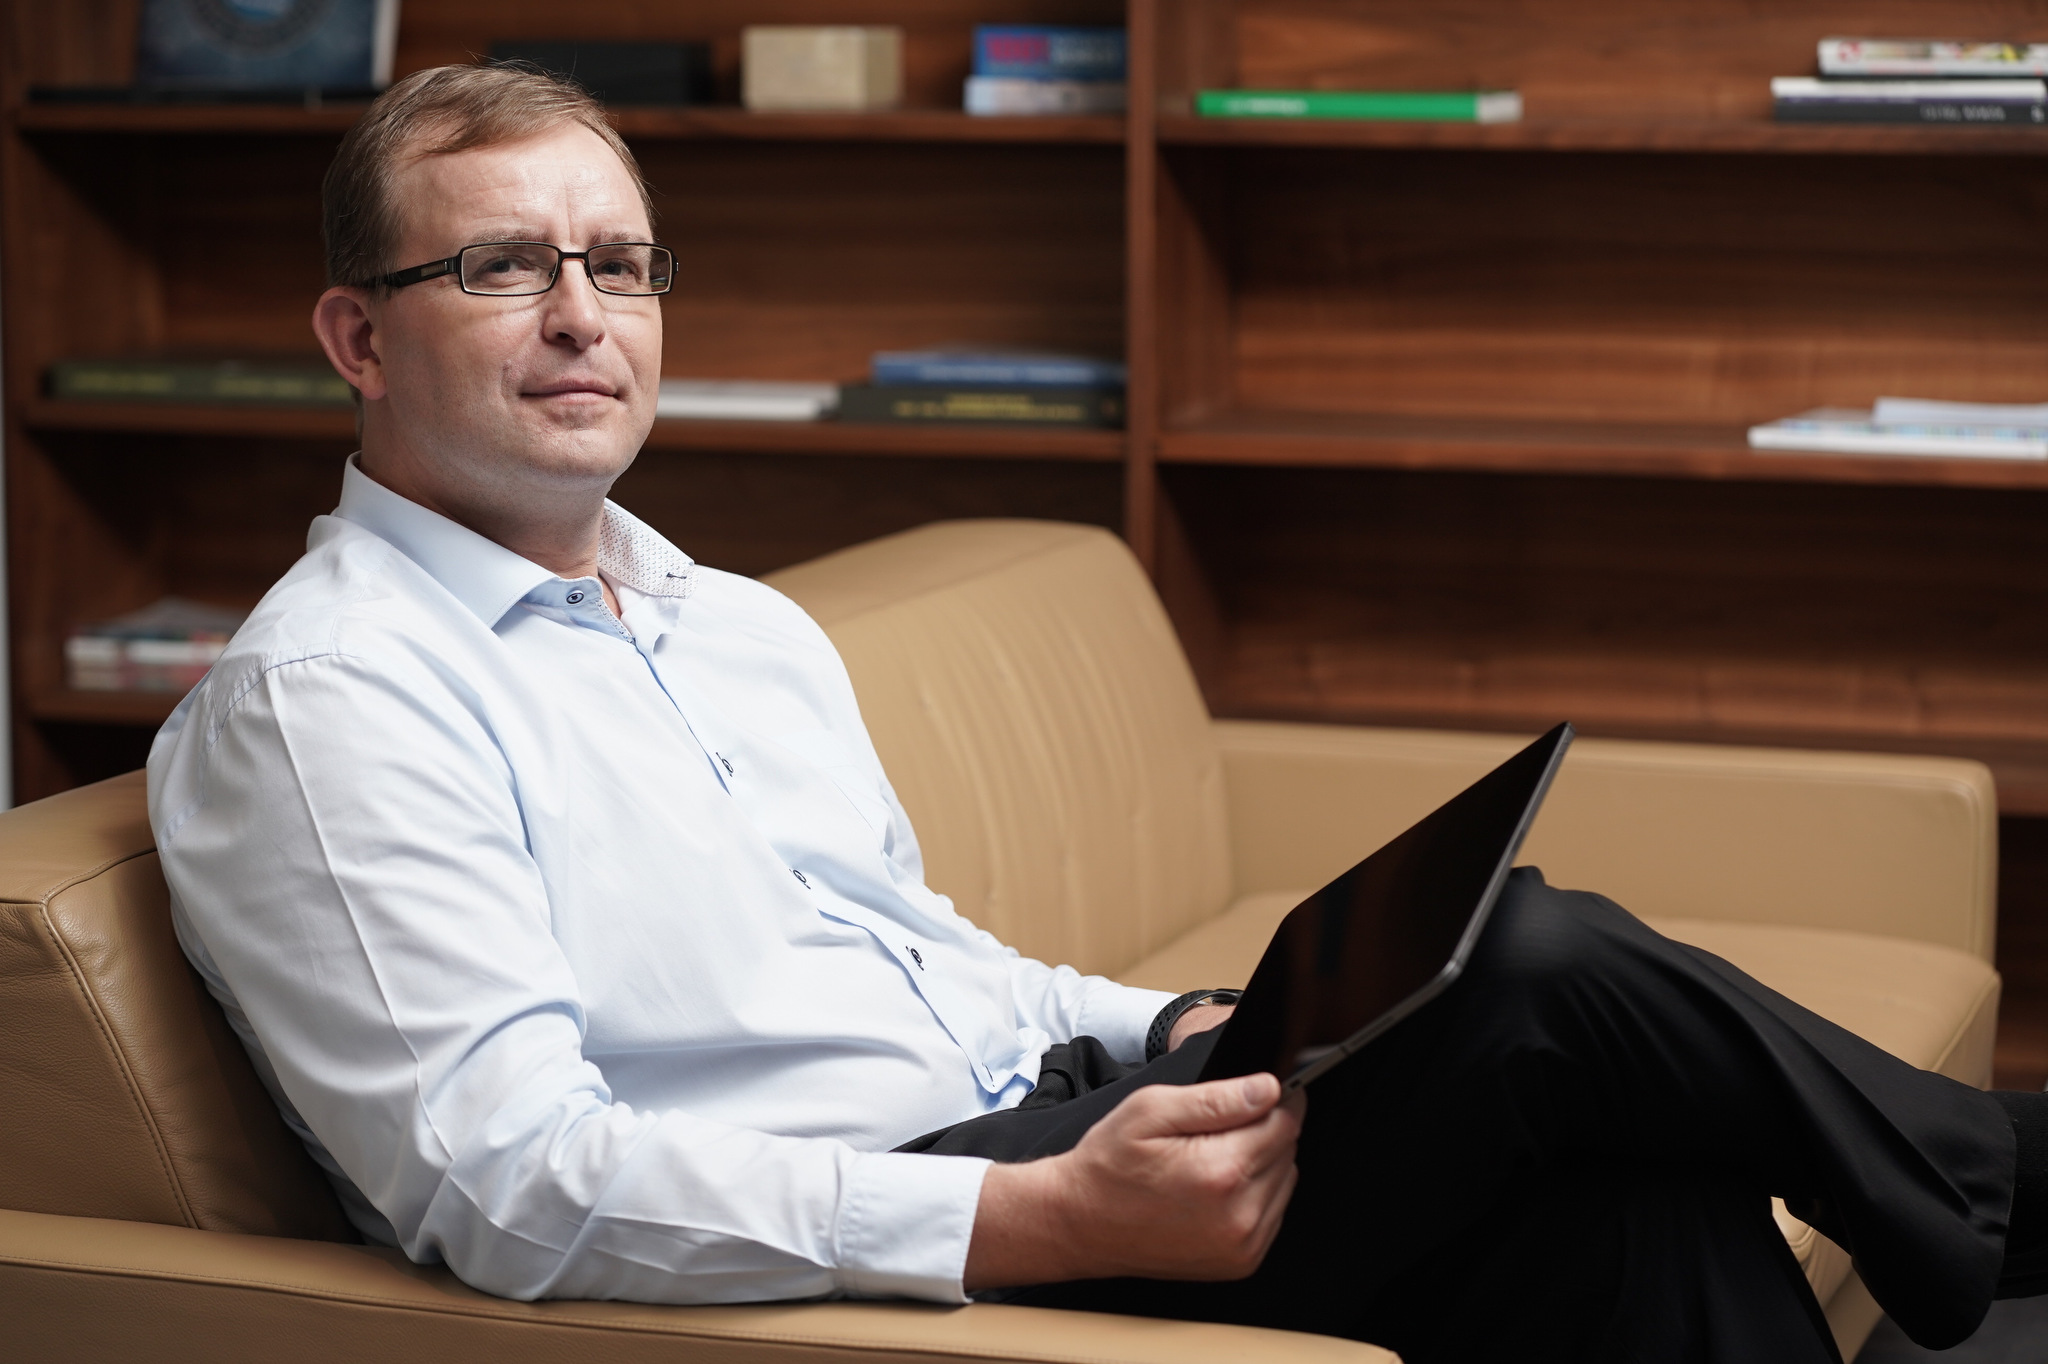 Zdenek Romanek, Președinte&CEO, Raiffeisen Bank: Investim în sprijinirea clienților noștri și acordăm împrumuturi pe termen lung